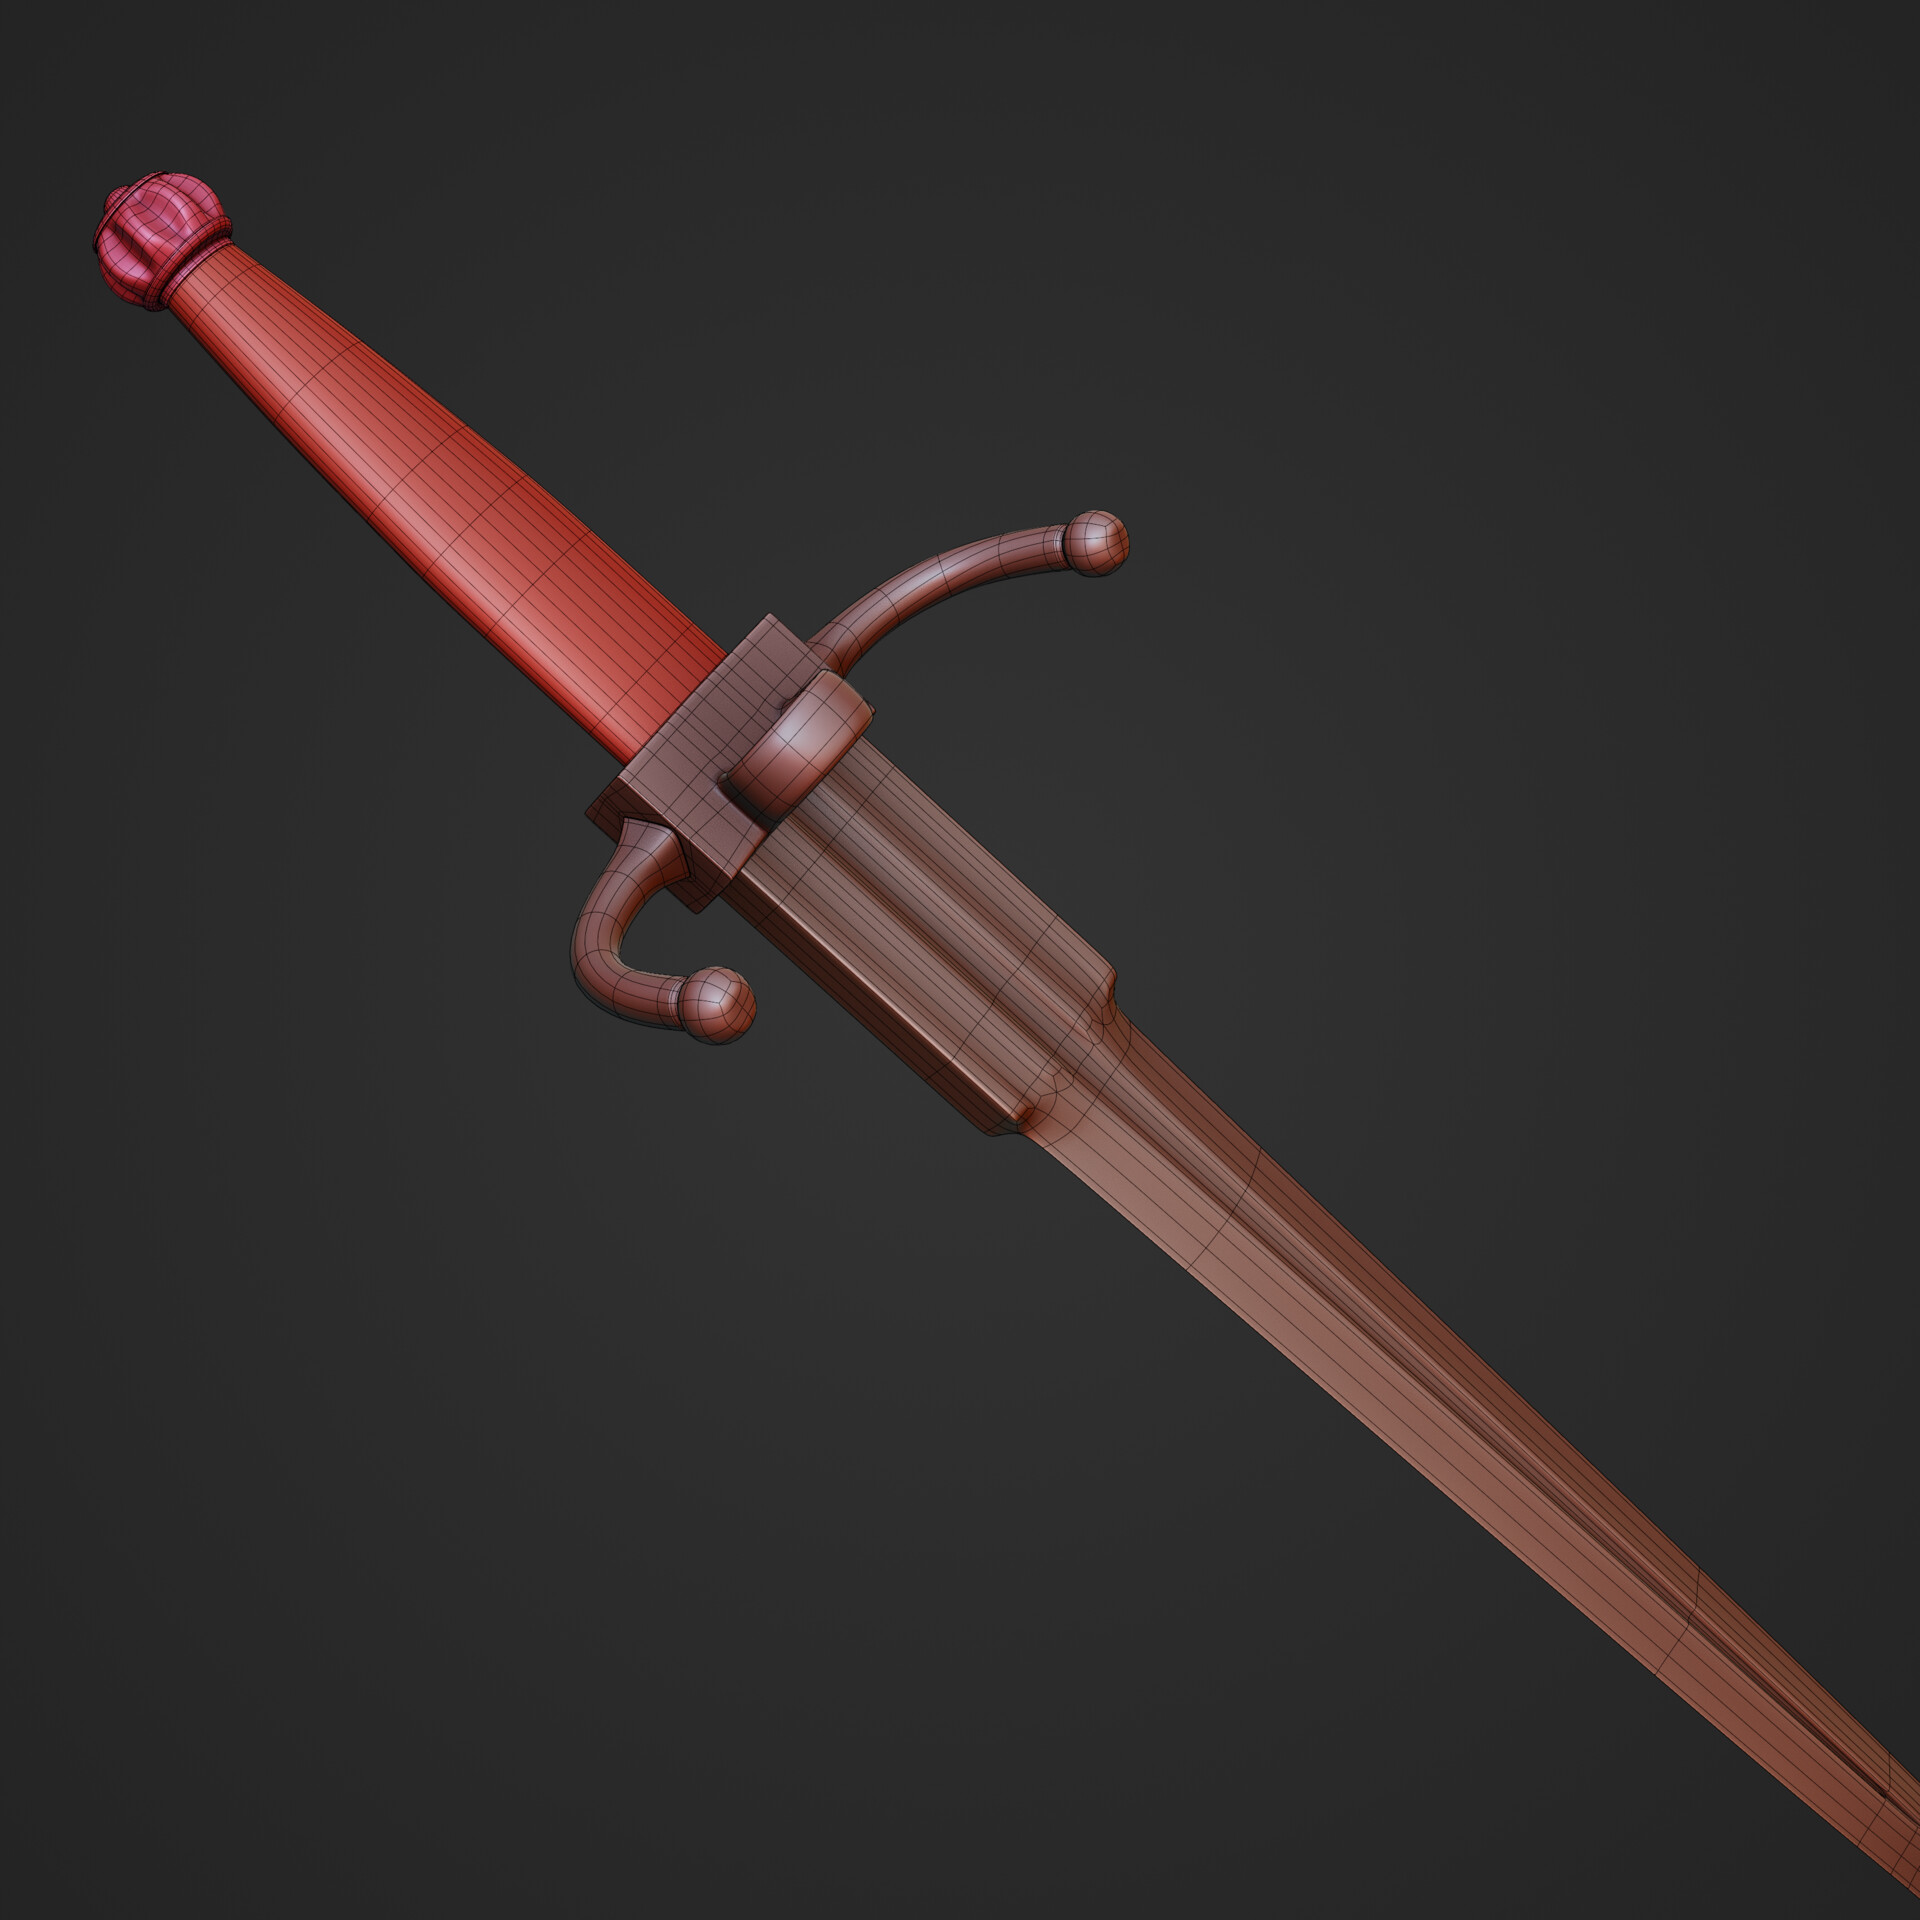 Noureddine ait hellal sword6